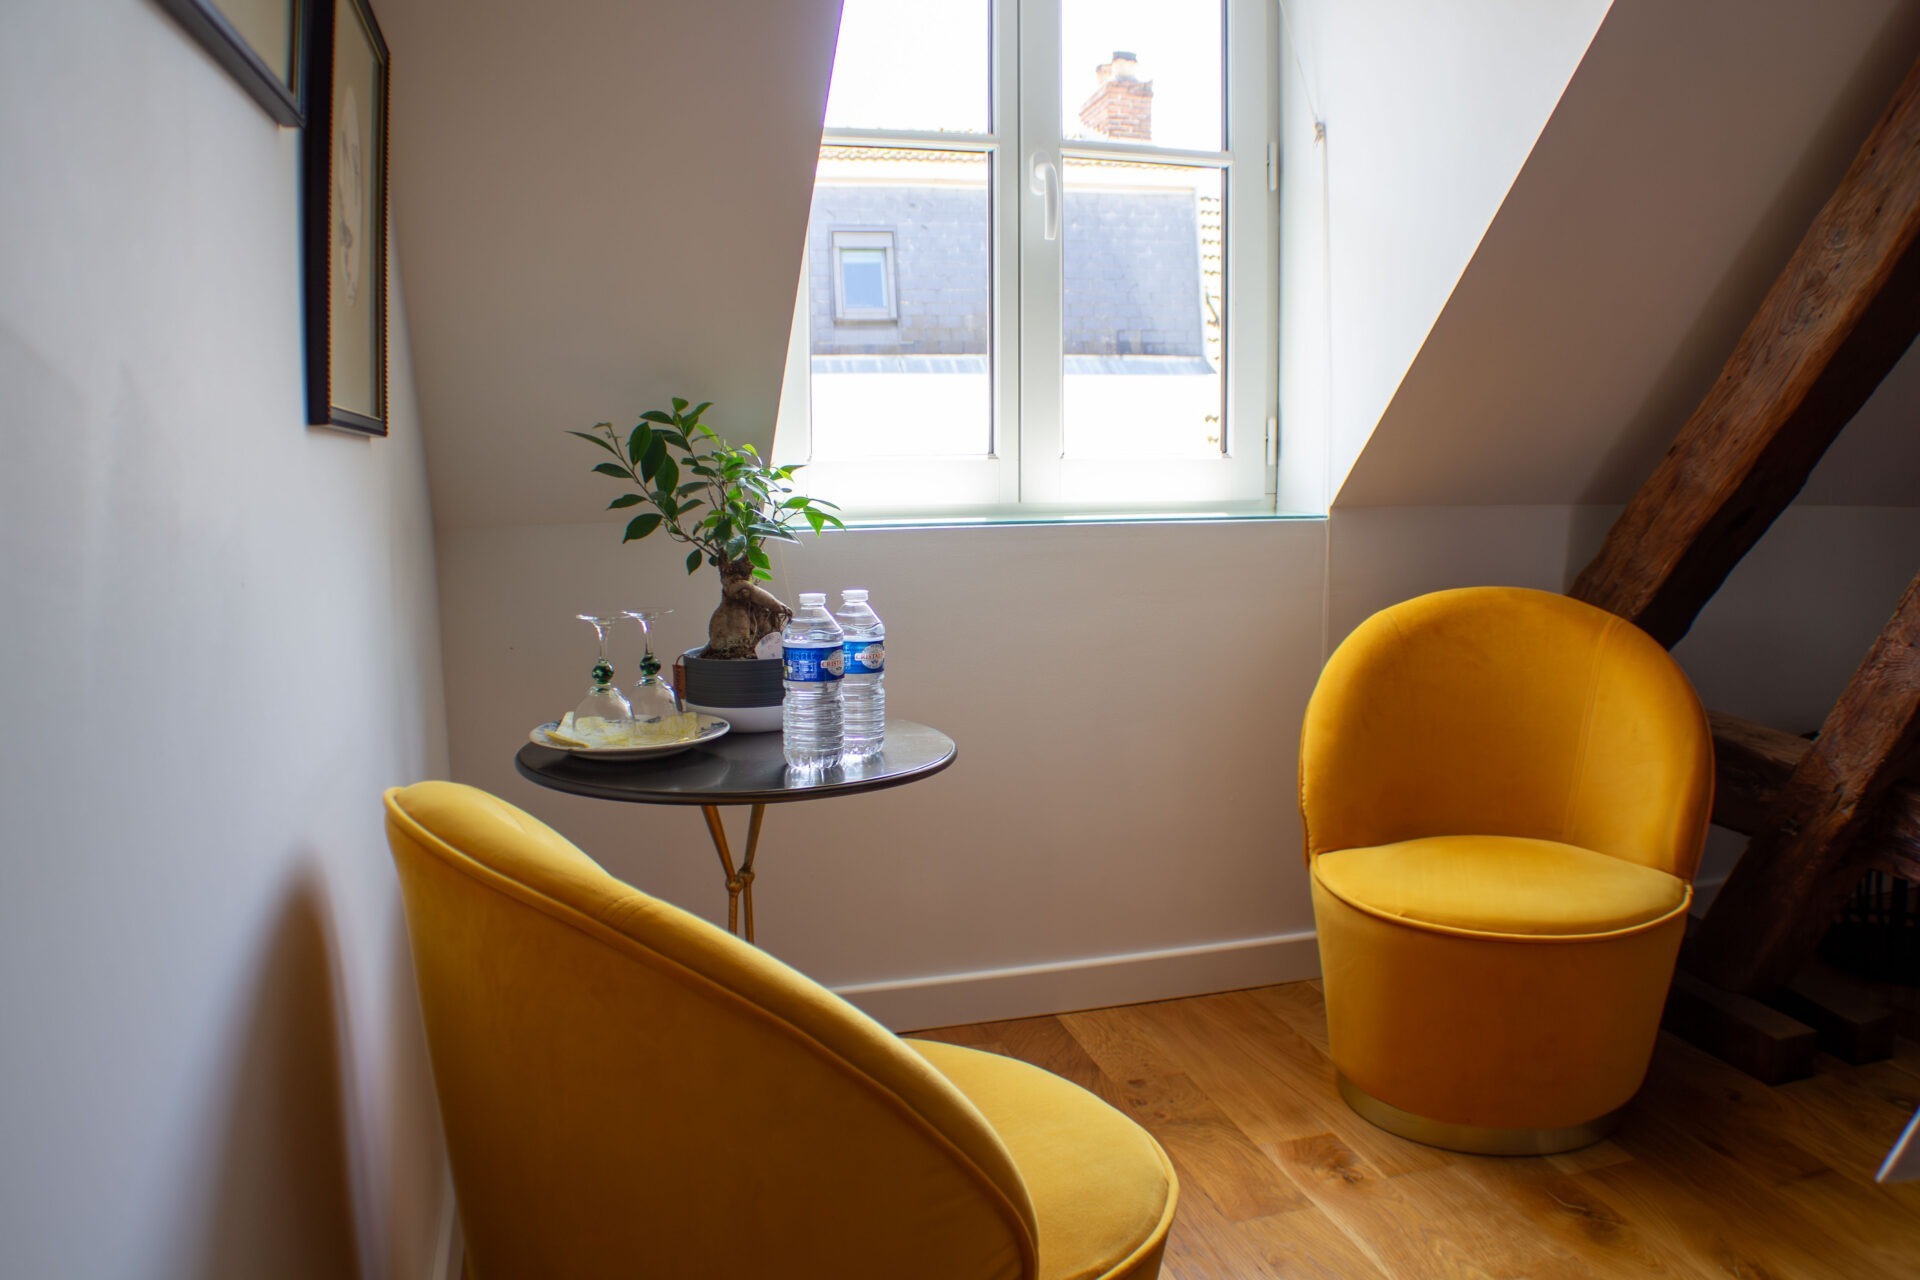 Petit coin salon avec deux fauteuils jaune autour d'une petite table ronde à côté de la fenêtre